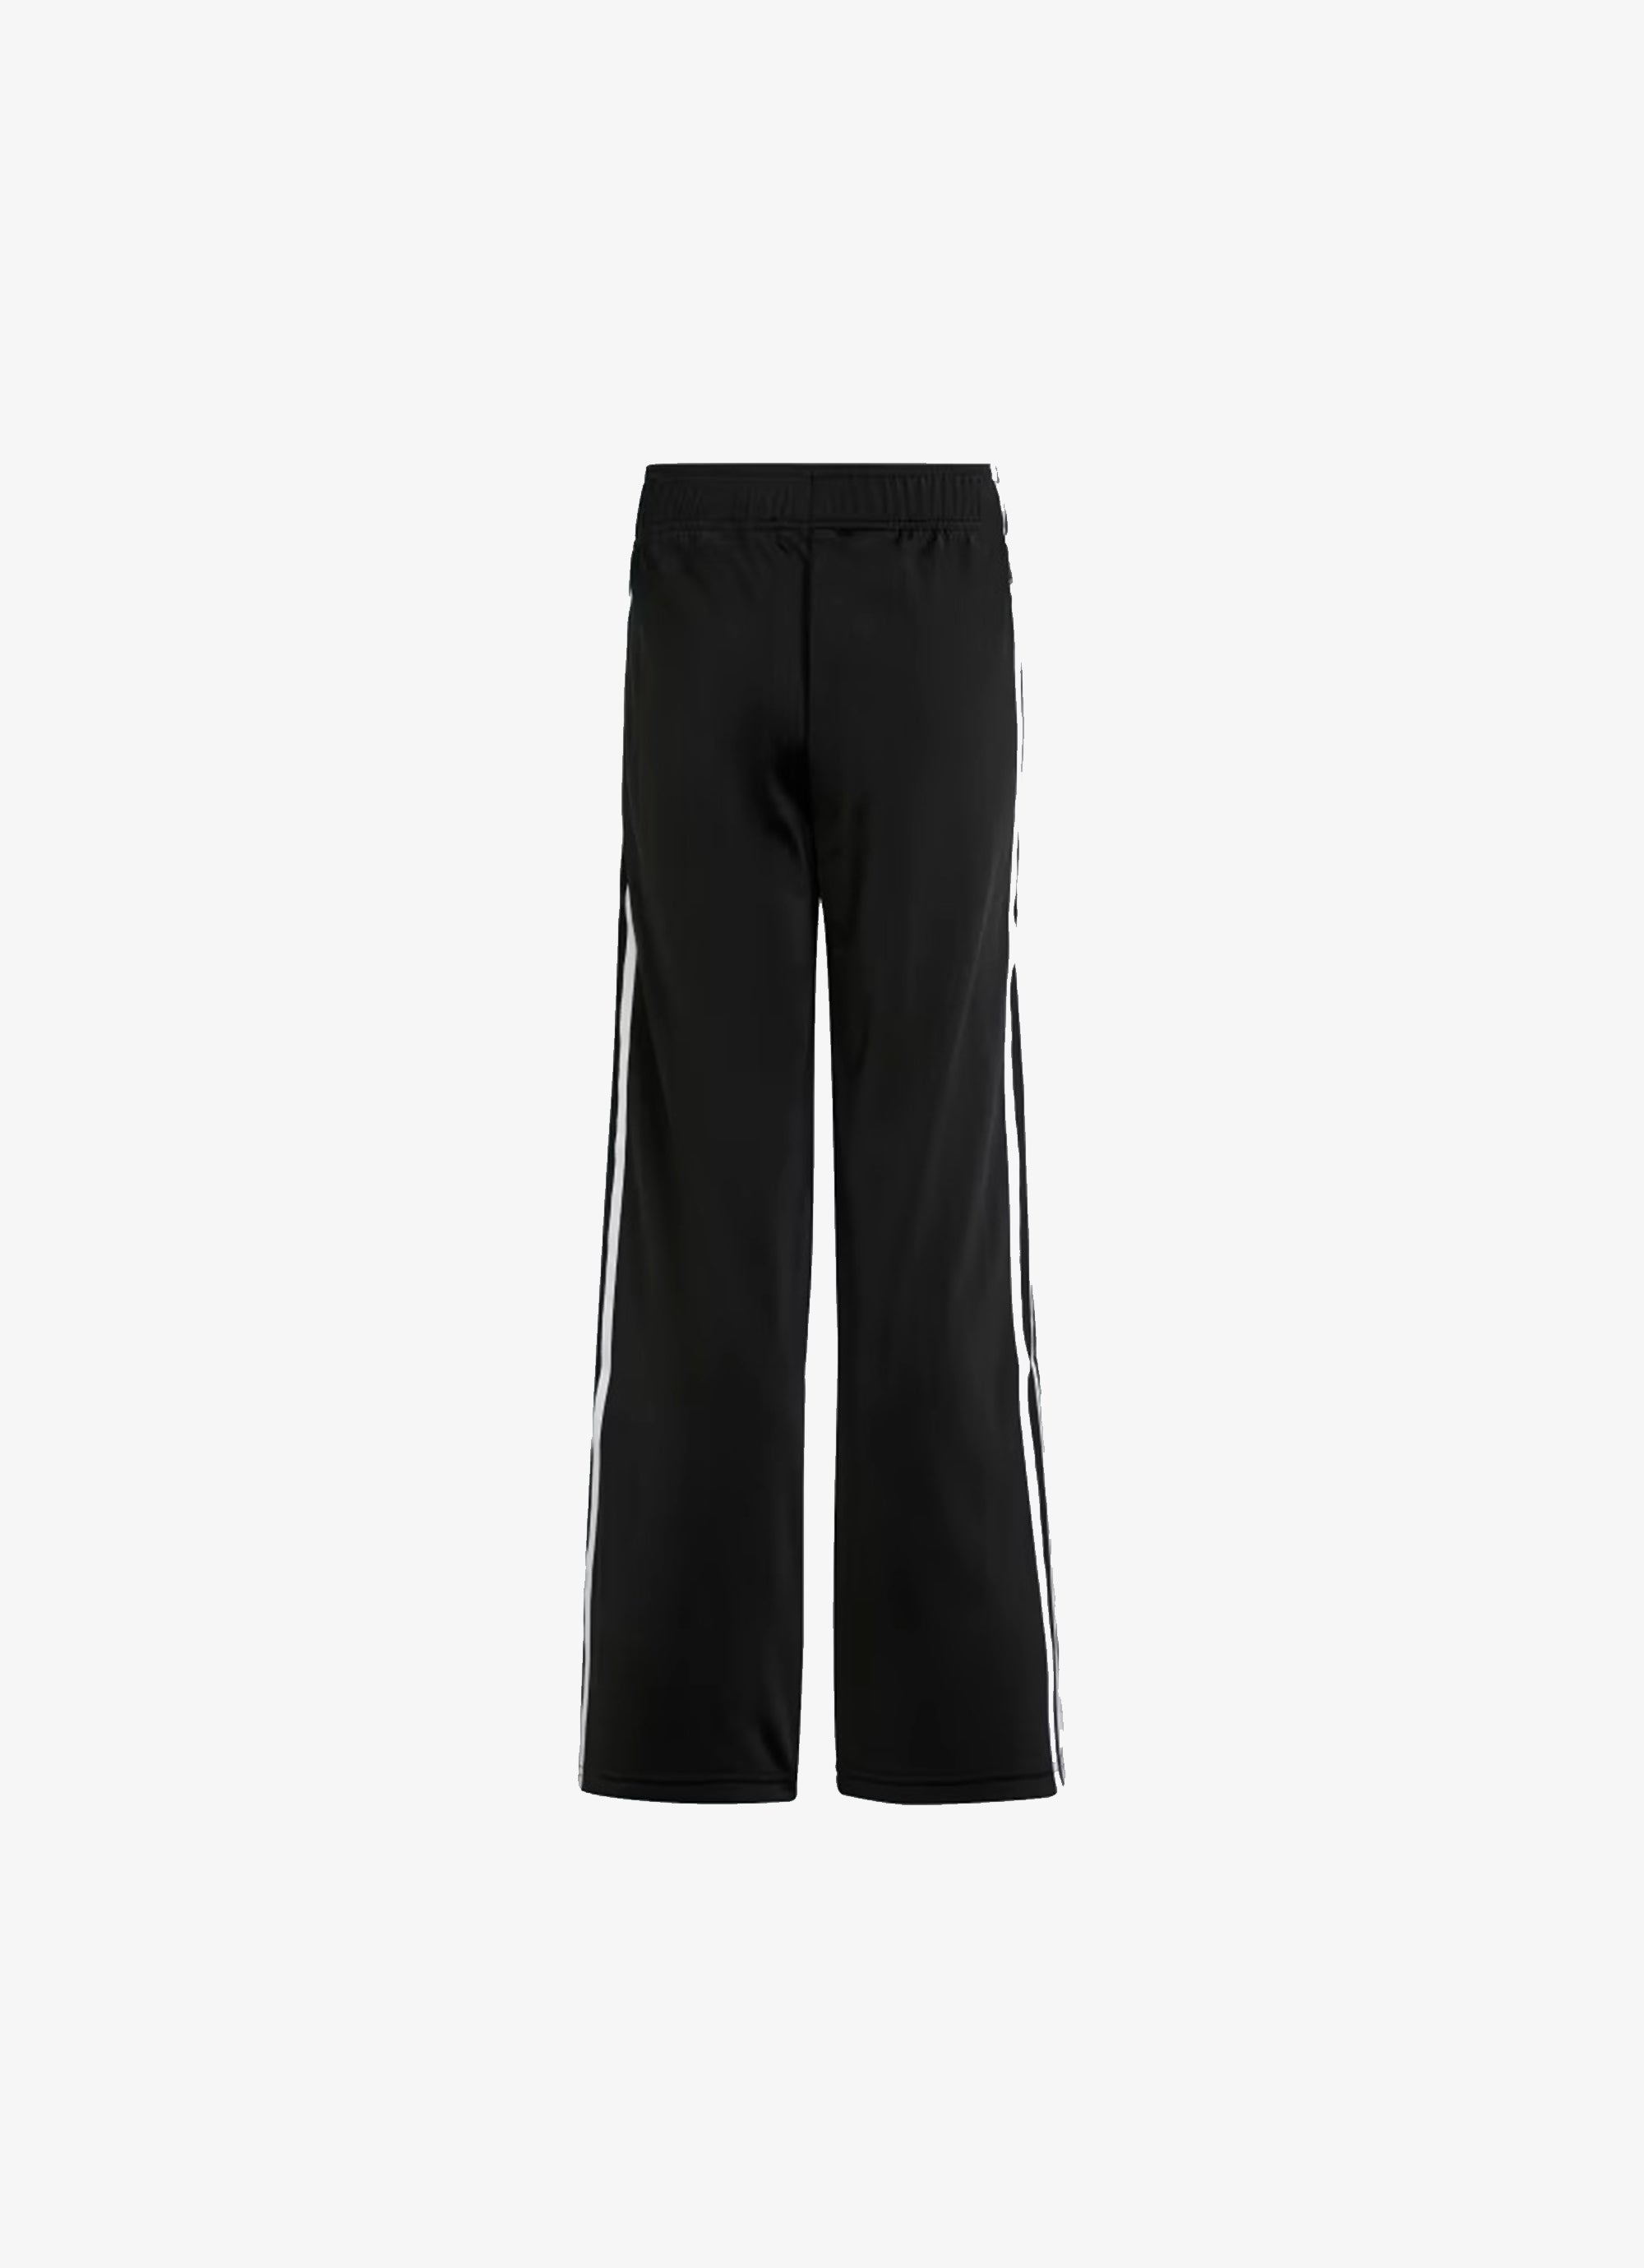 Adidas Originals Adicolor Wide Pants - Youth in Black